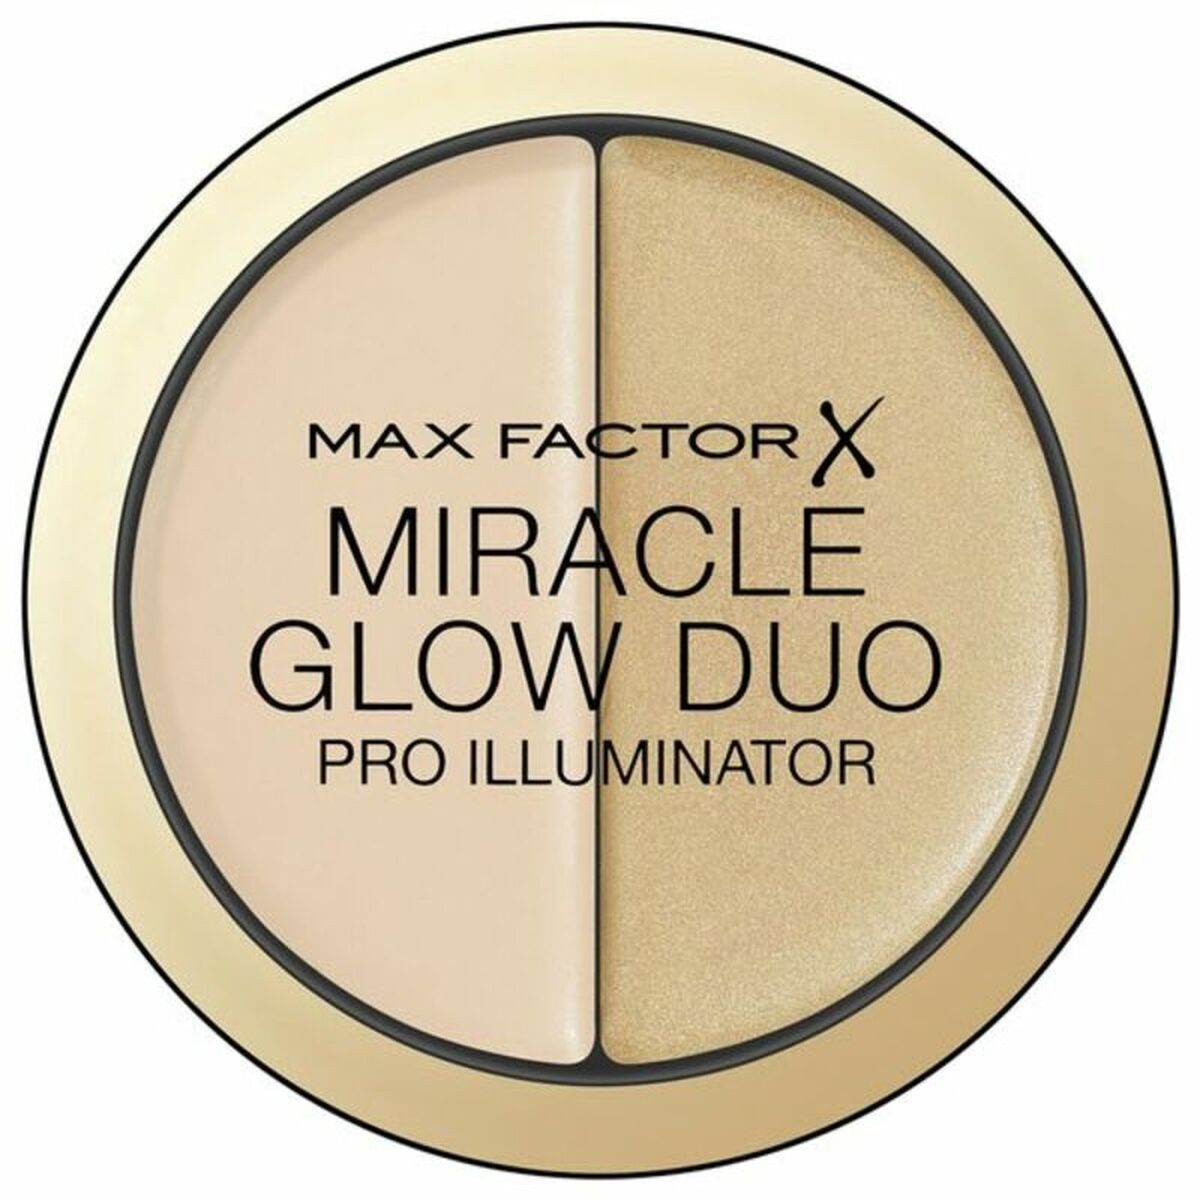 Fator Max Factor Max Miracle Miracle Miracle